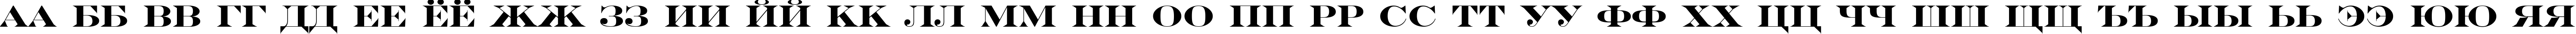 Пример написания русского алфавита шрифтом a_SeriferExpTitul Bold